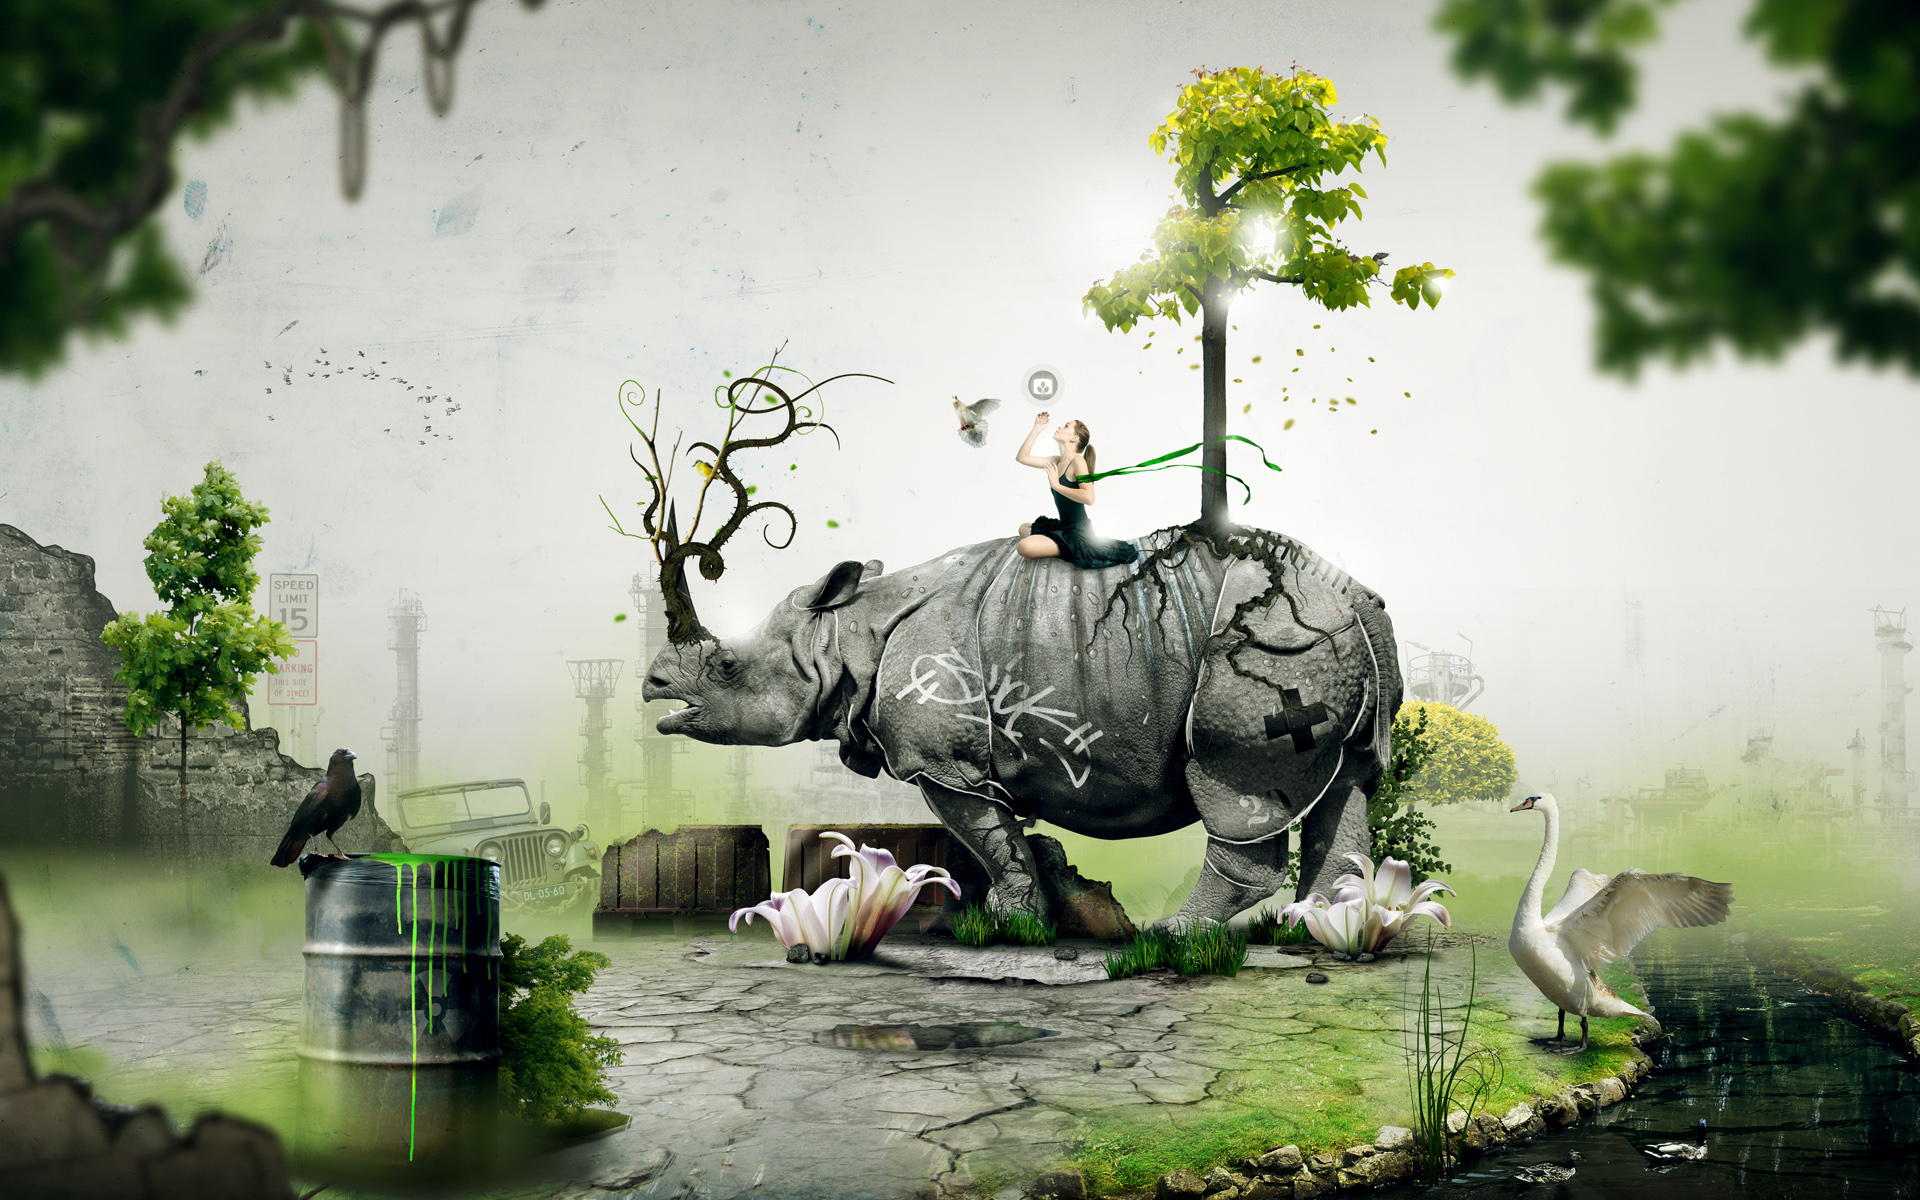 nature, trees, animals, Desktopography - desktop wallpaper